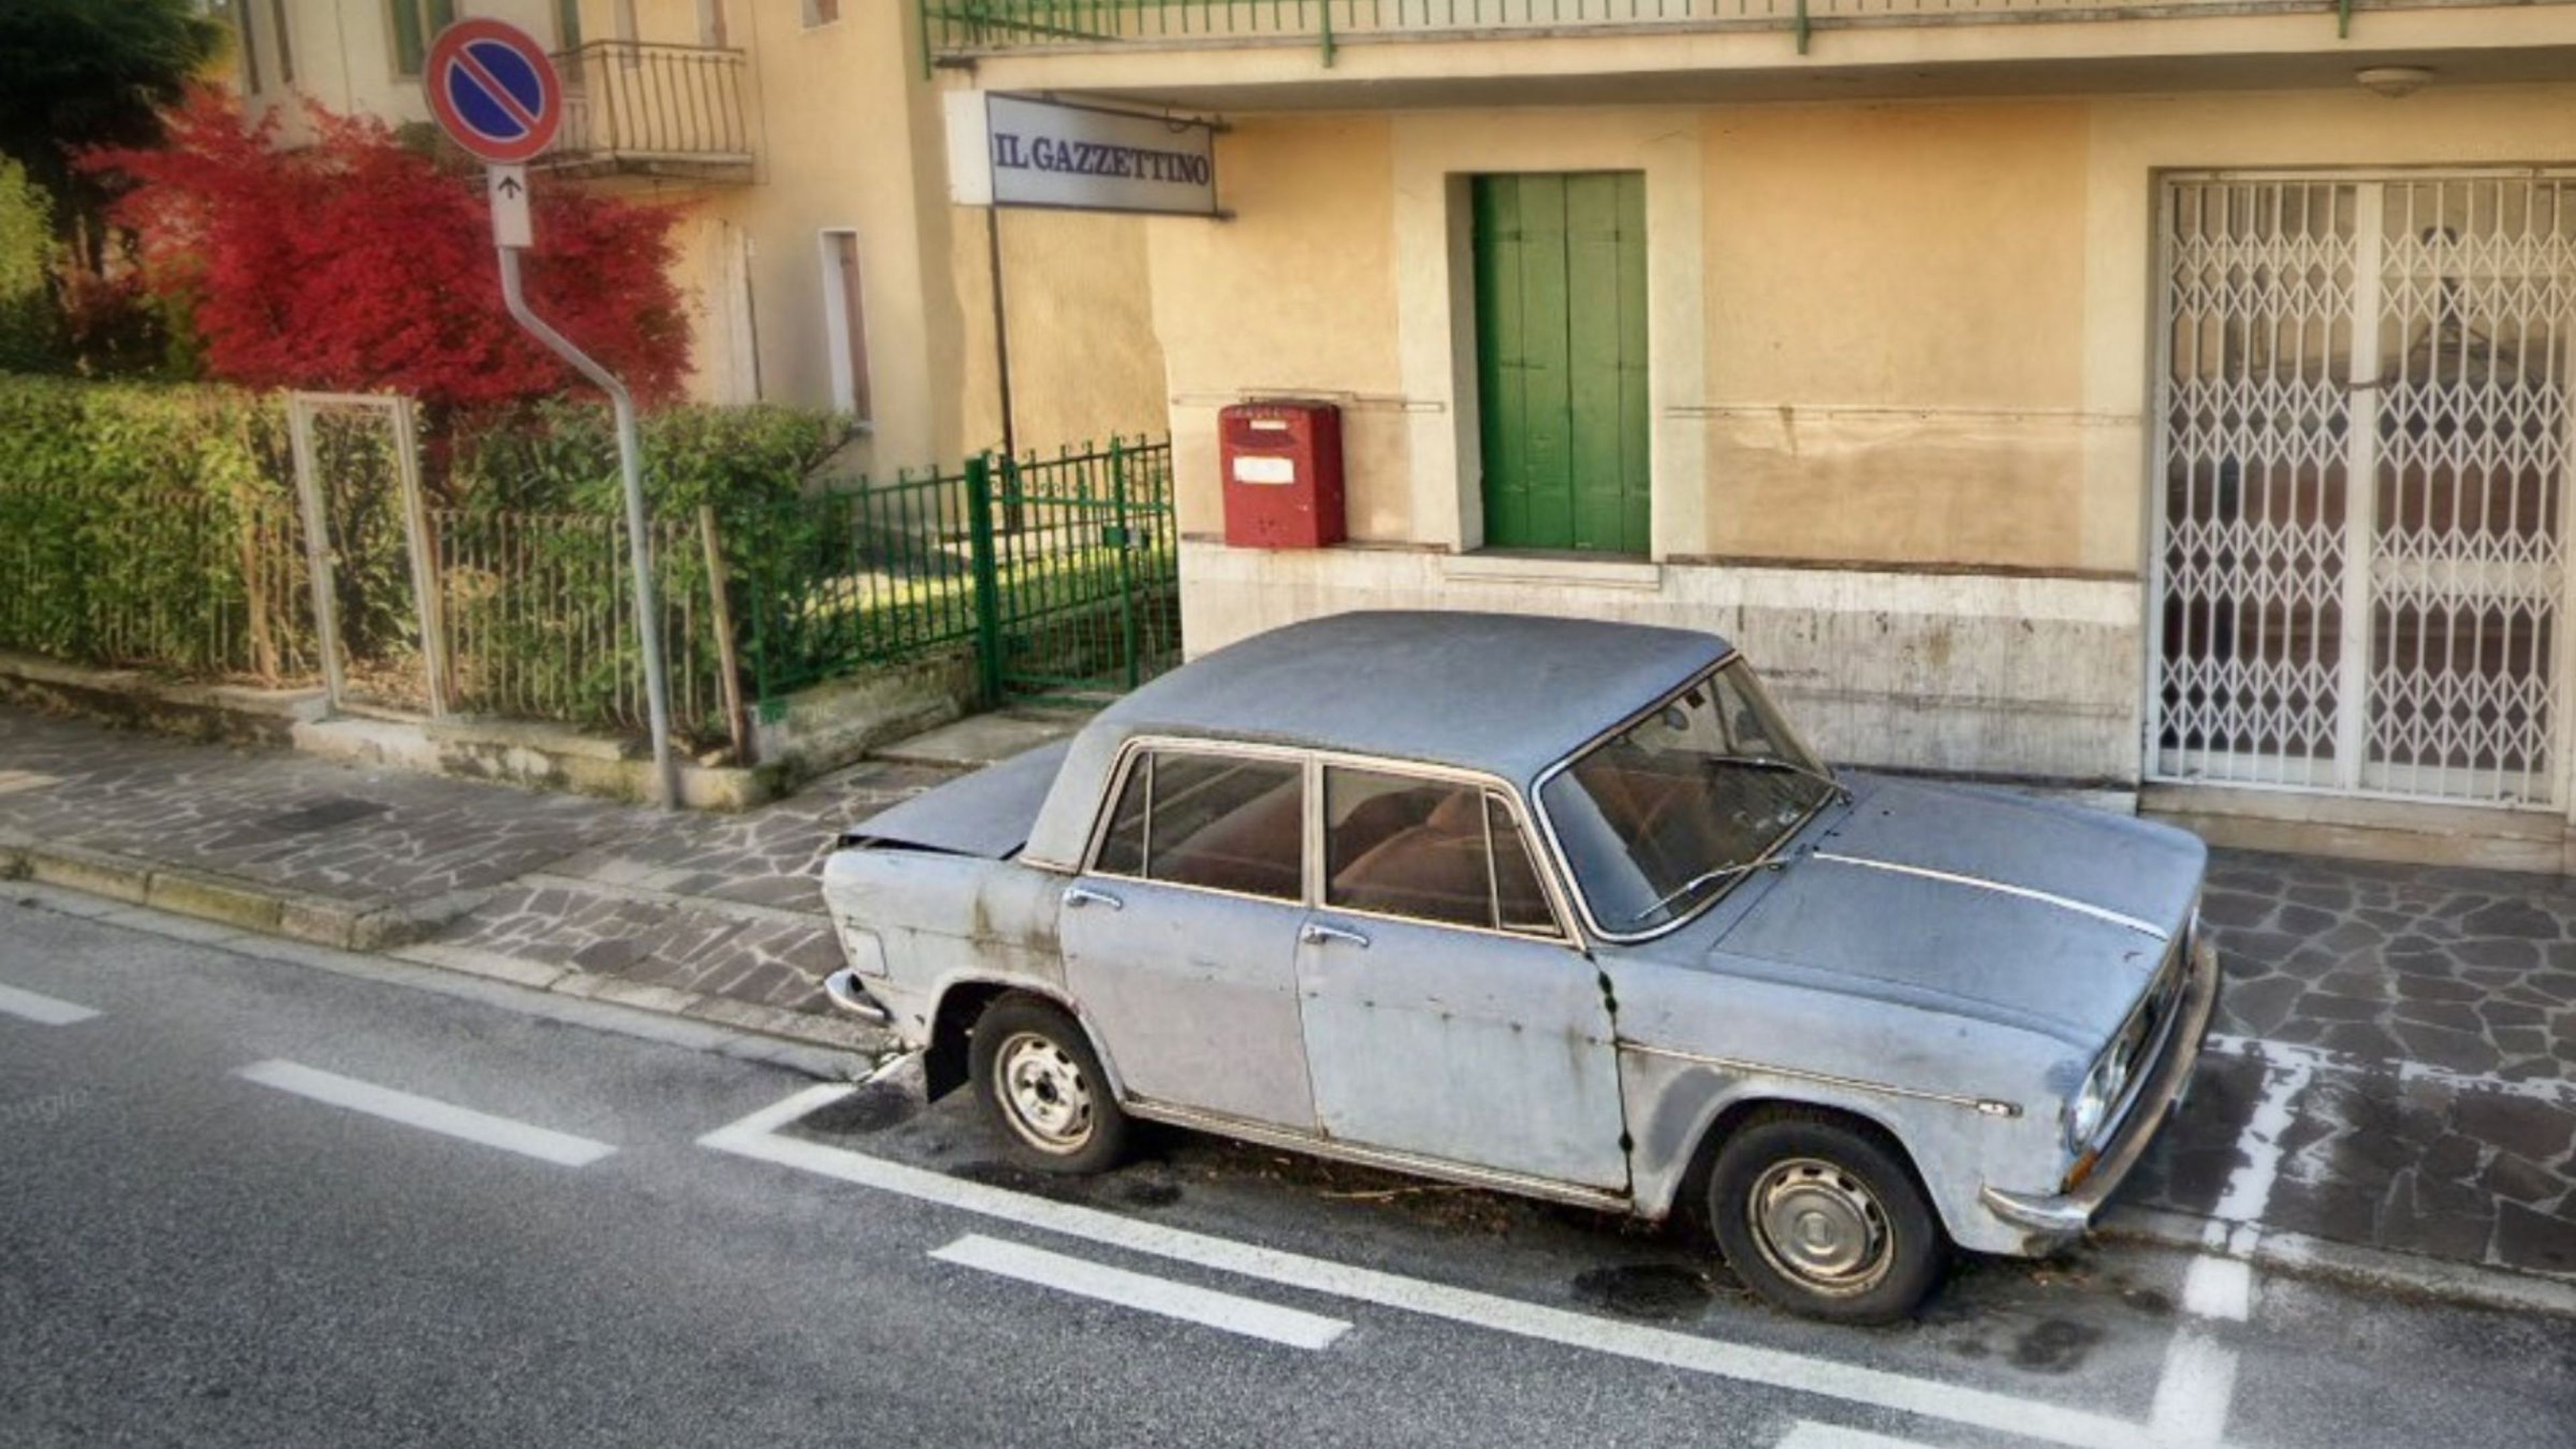 Este Lancia Fulvia de 1962, que está aparcado en el mismo sitio desde hace casi 50 años, es la atracción de la zona